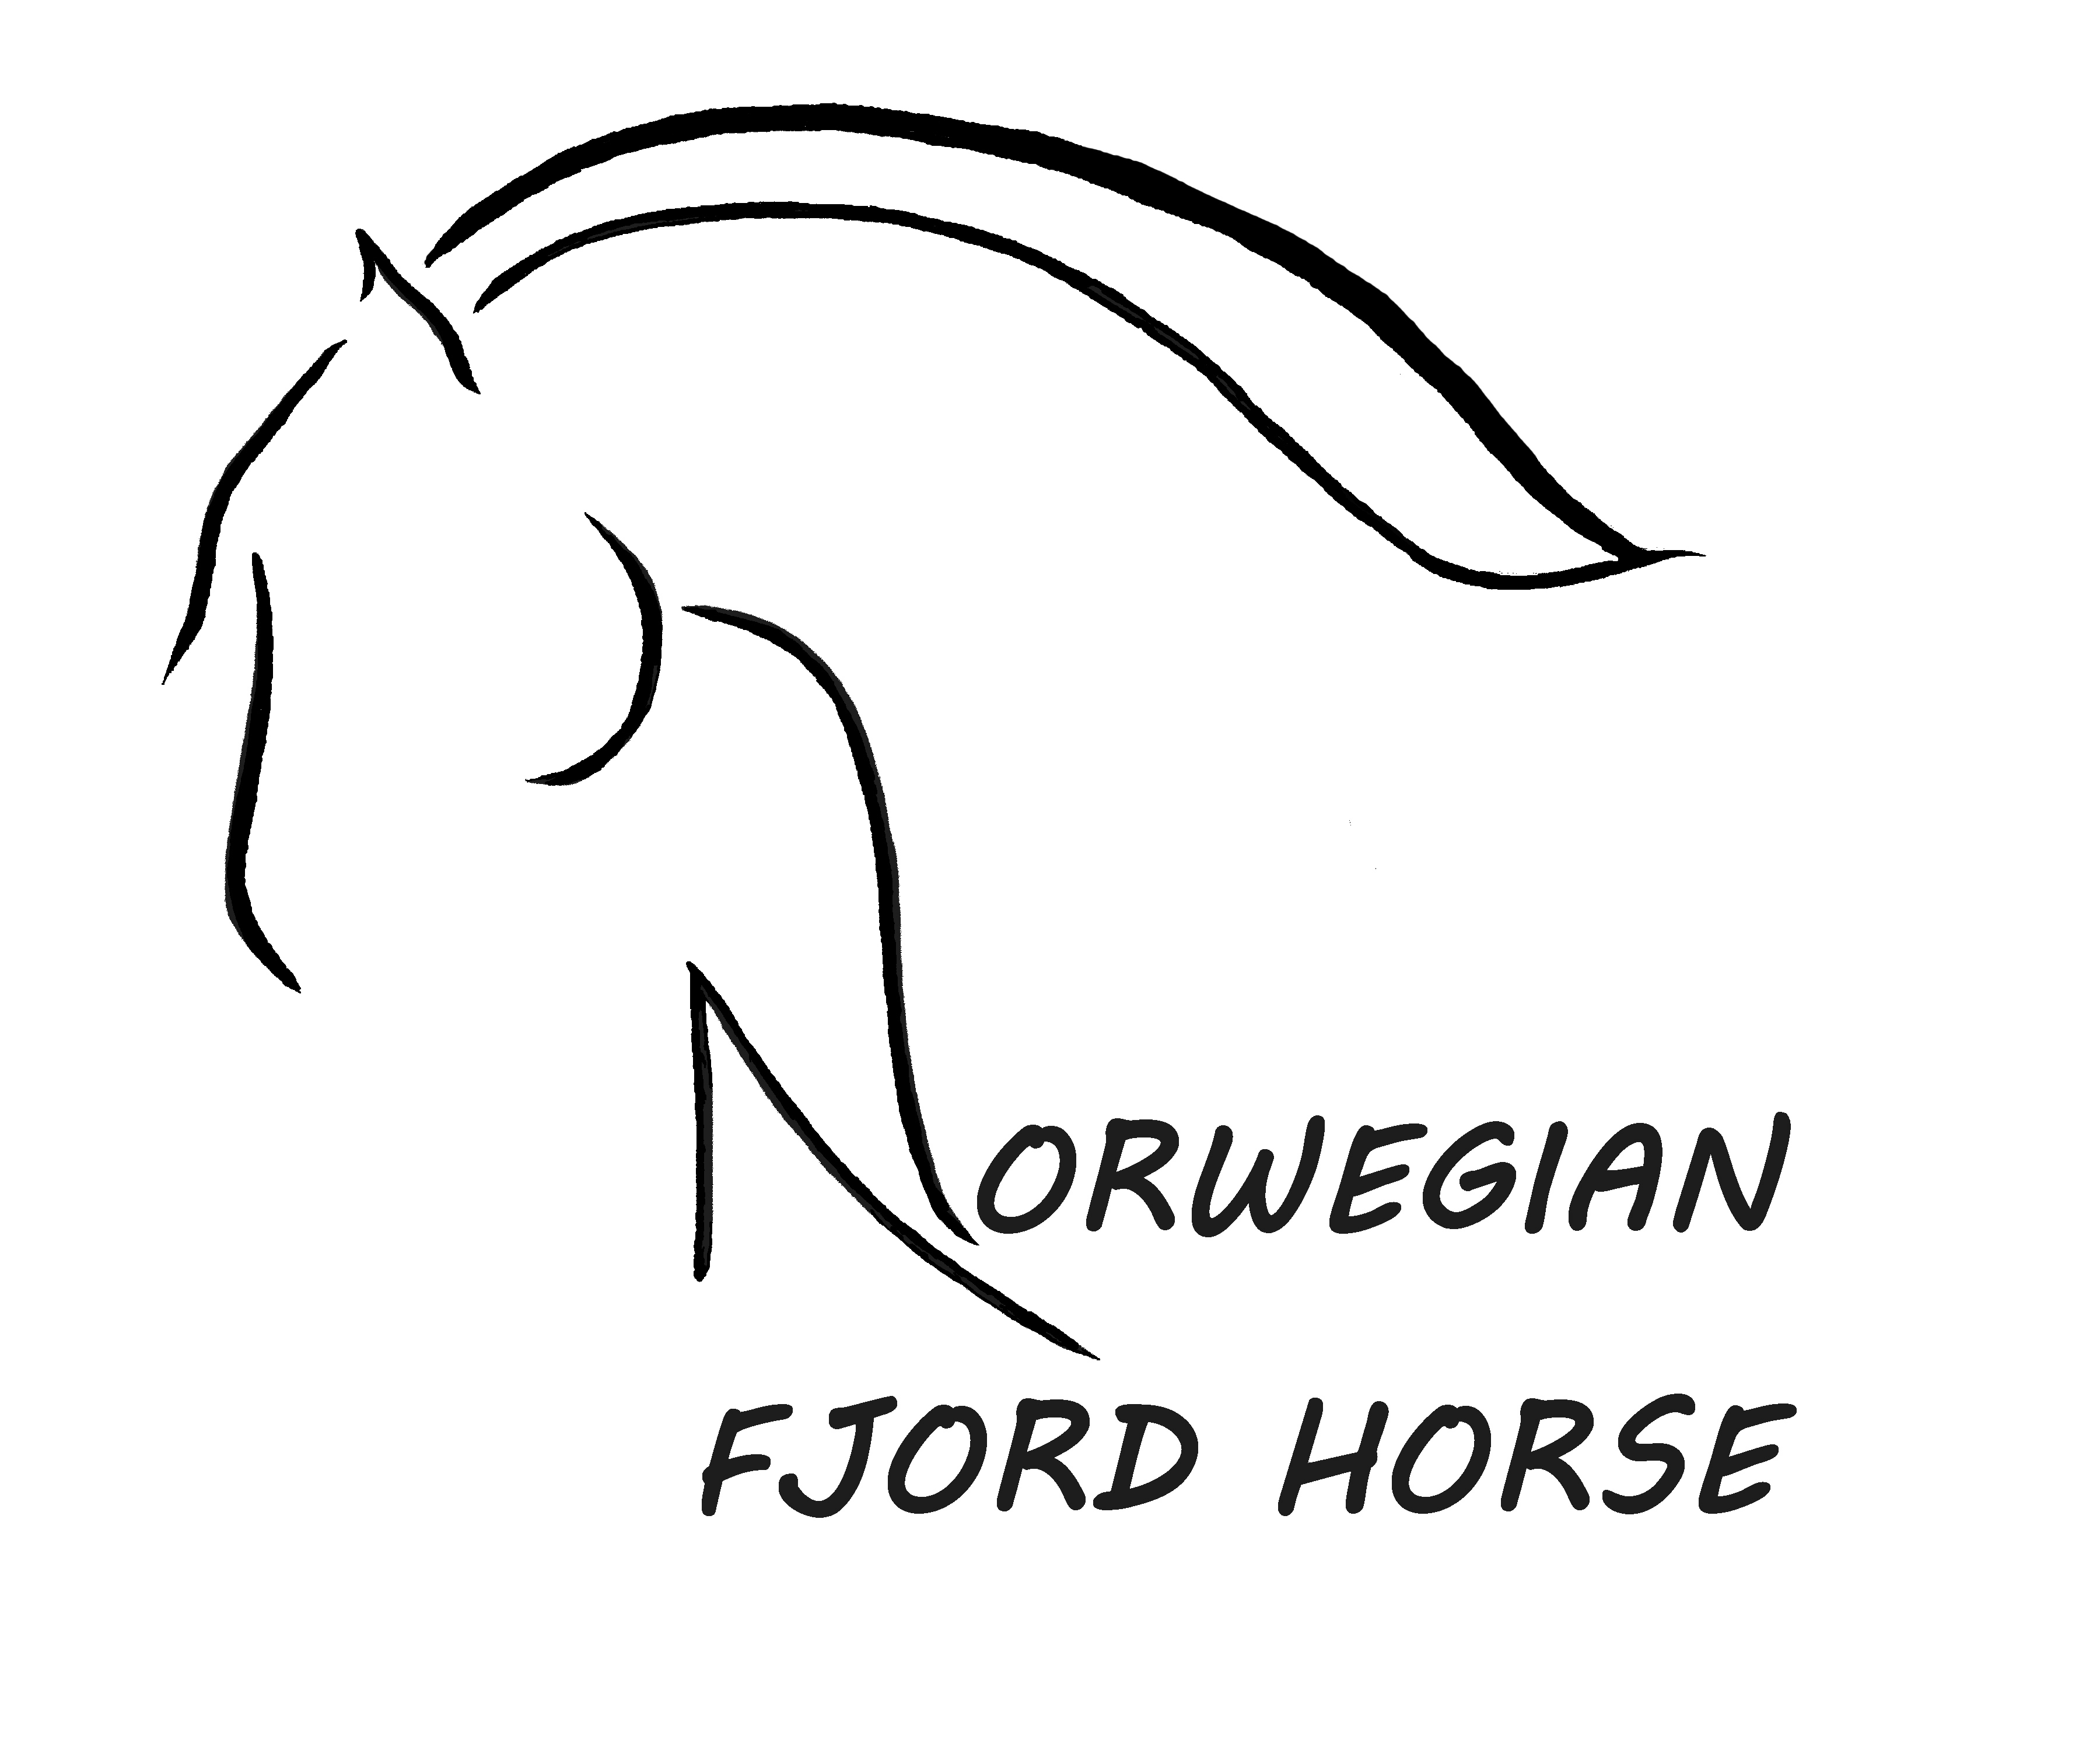 The Norwegian Fjord Horse Registry